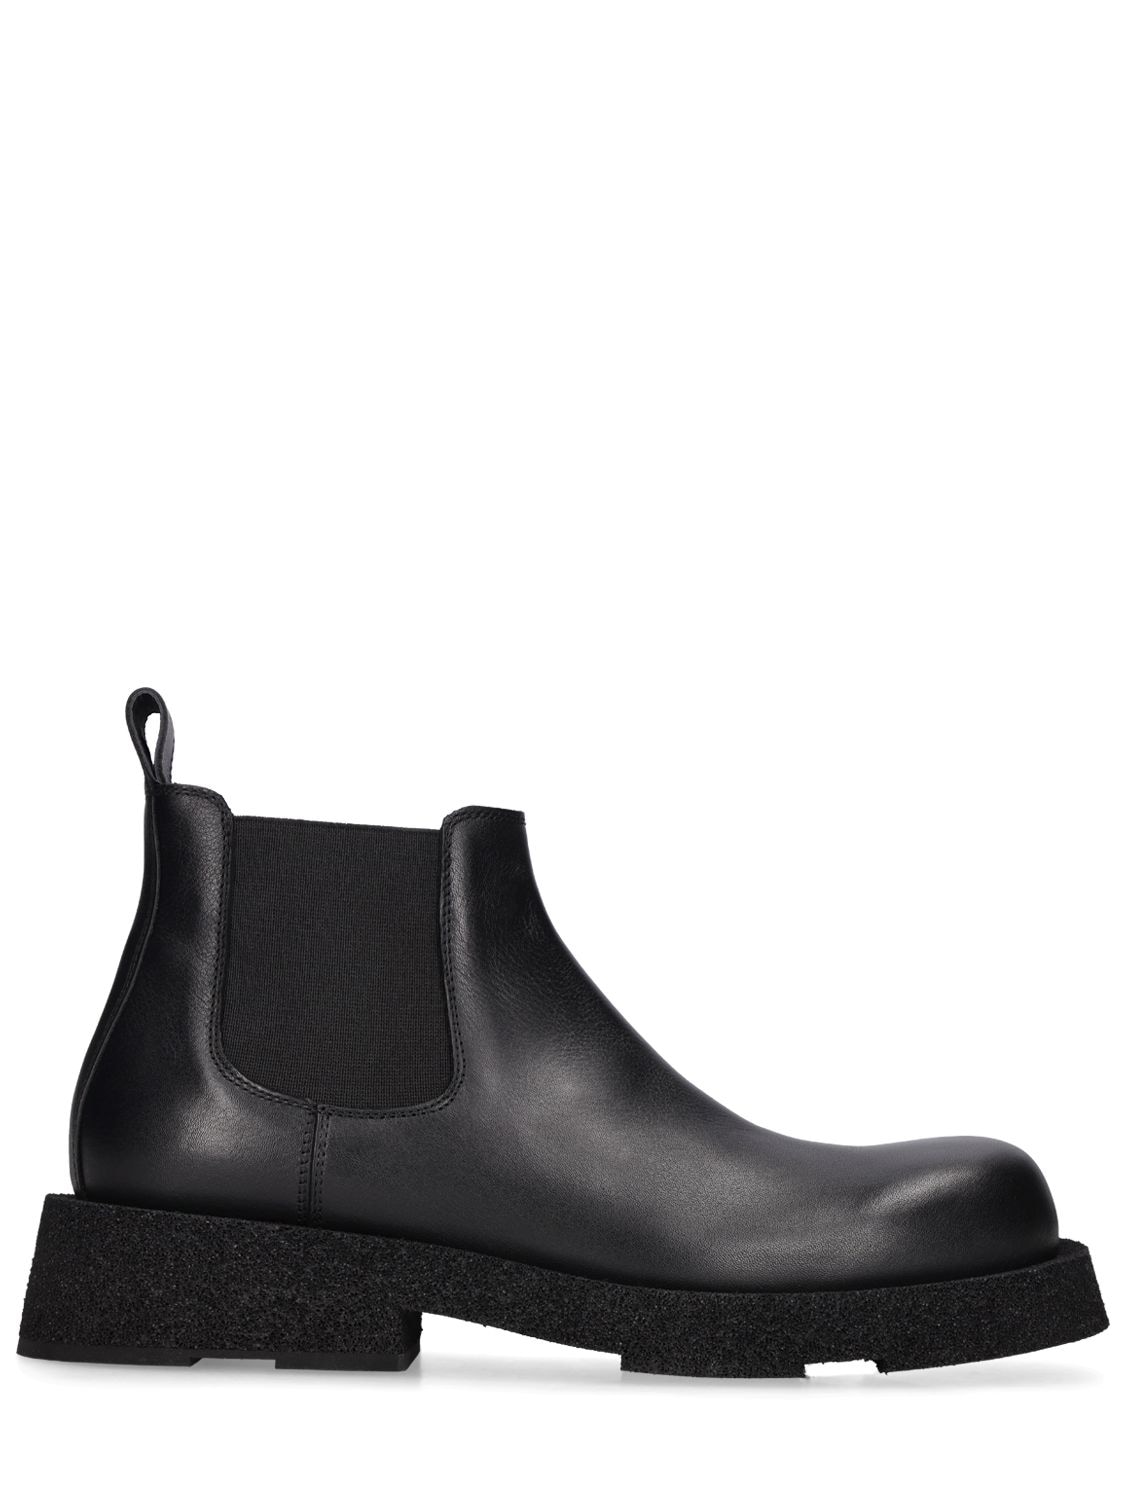 Mattia Capezzani Inca Leather Boots In Black